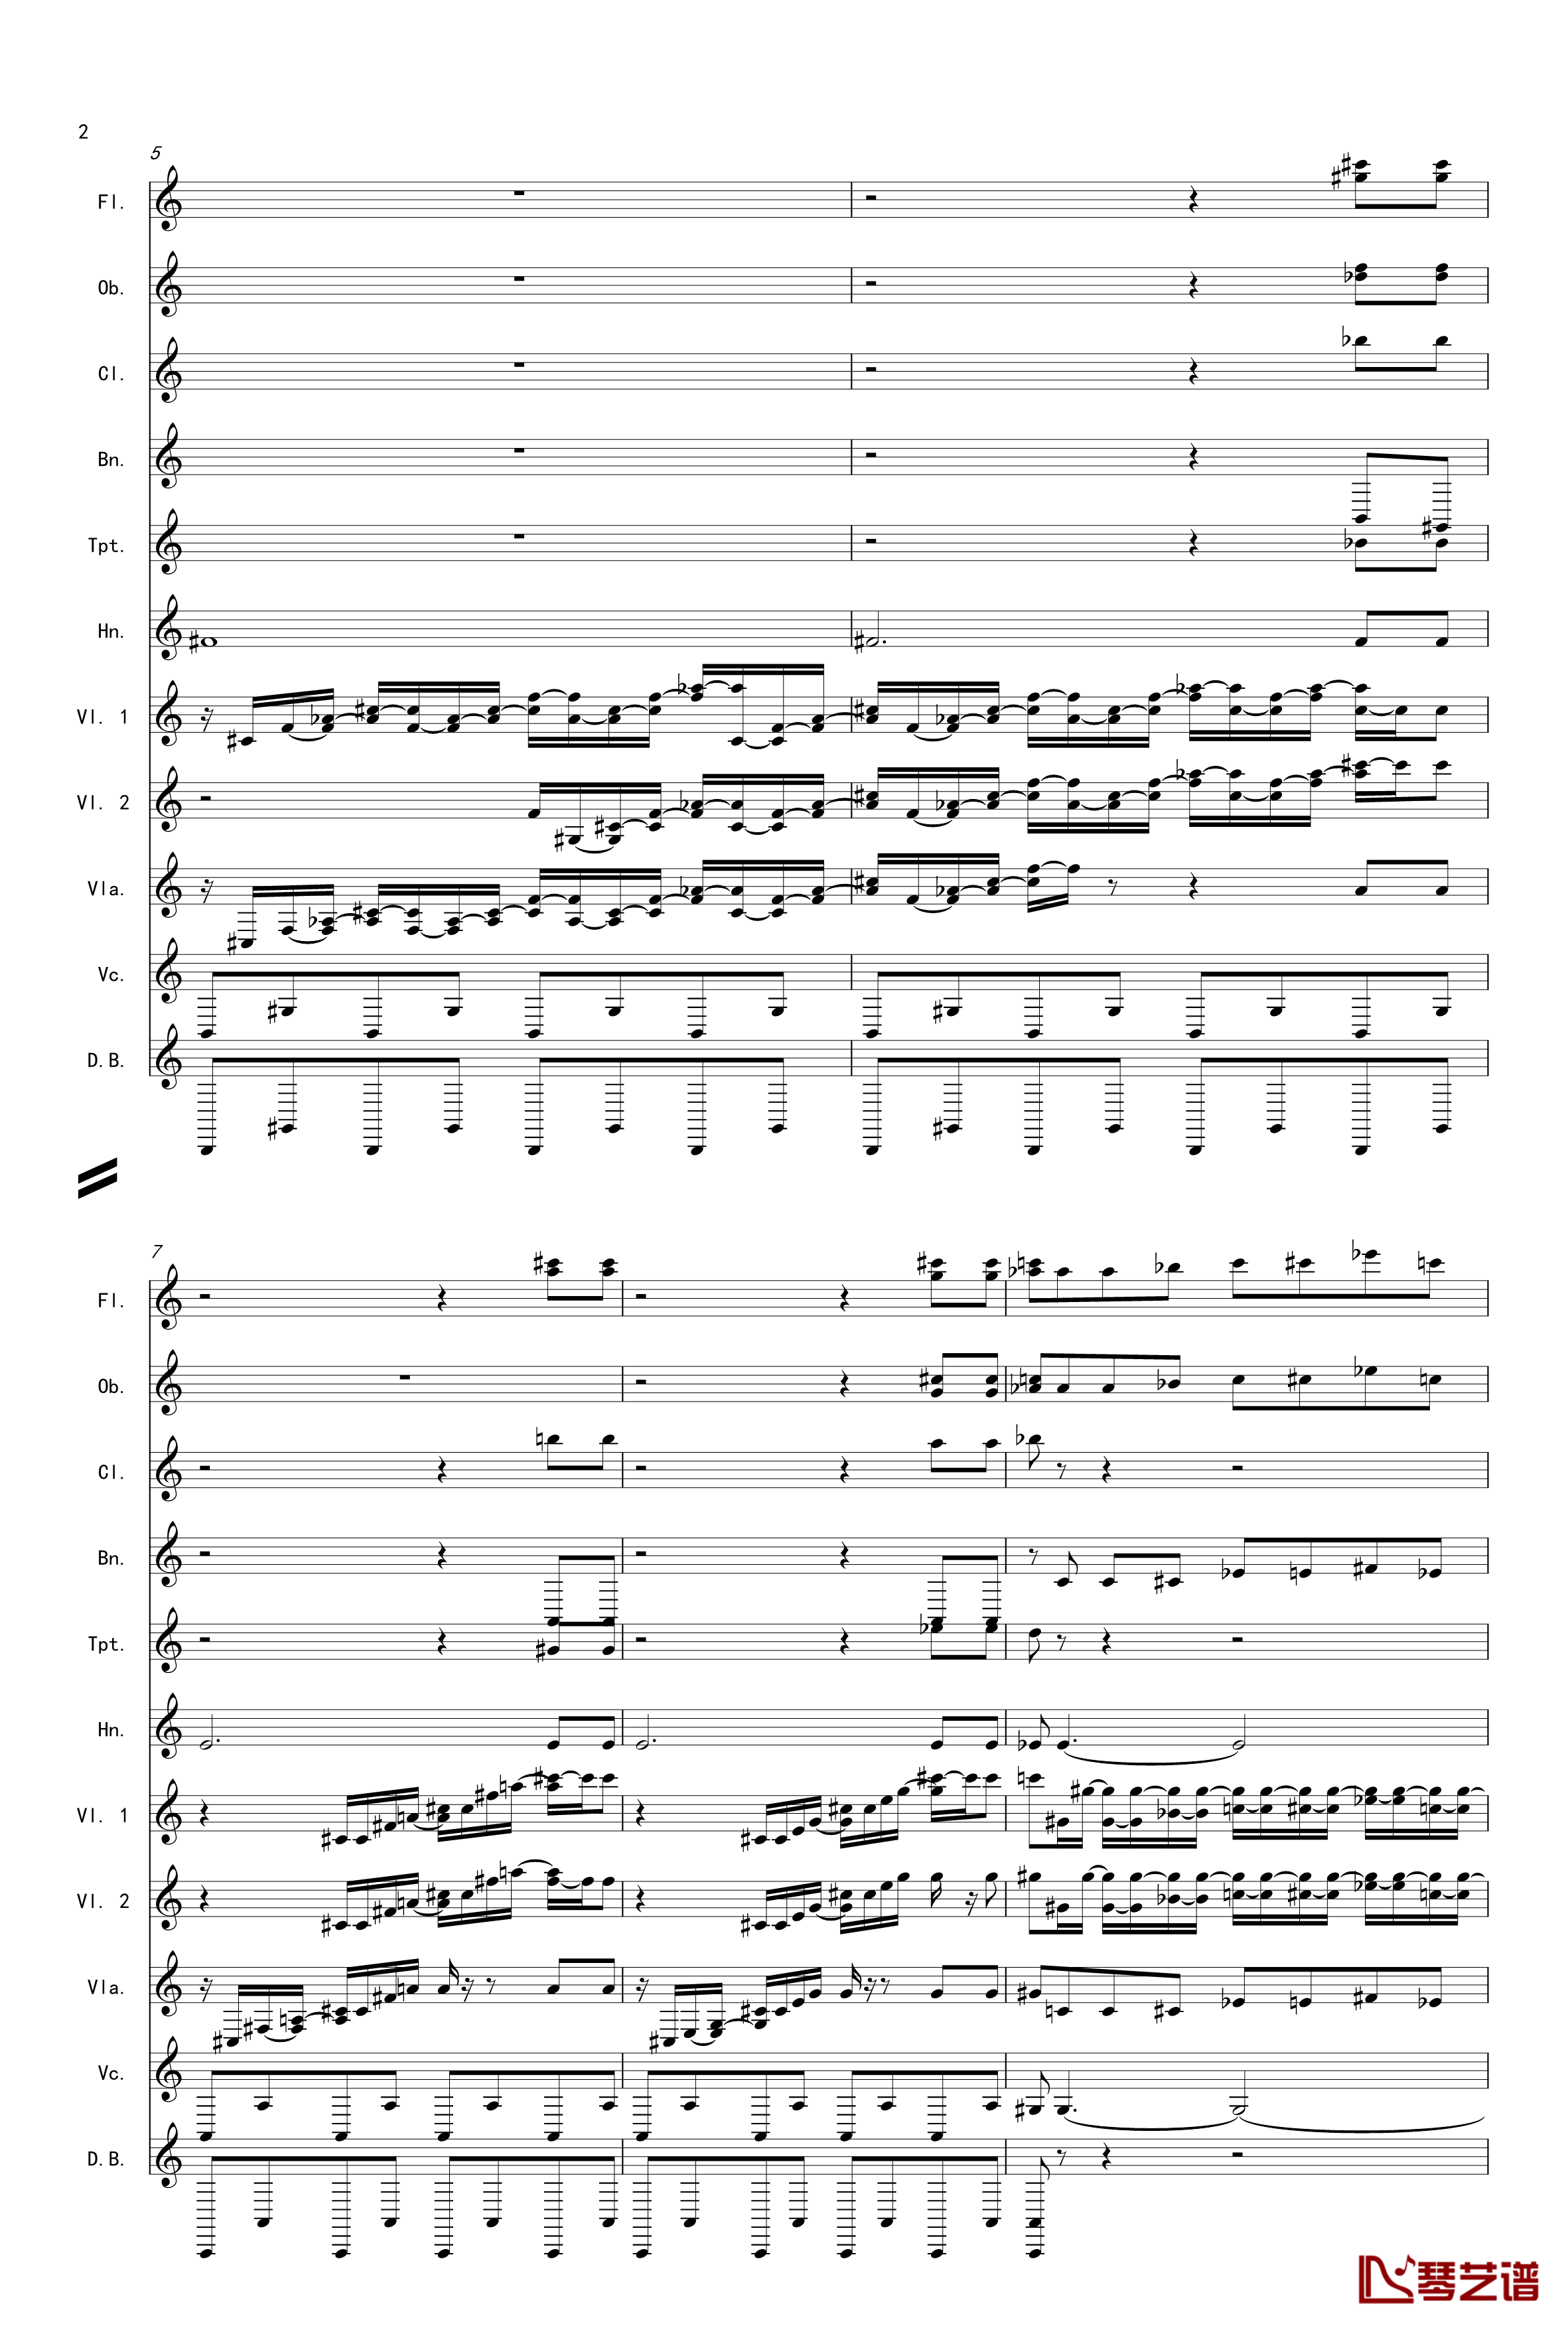 奏鸣曲之交响第14首Ⅲ钢琴谱-贝多芬-beethoven2